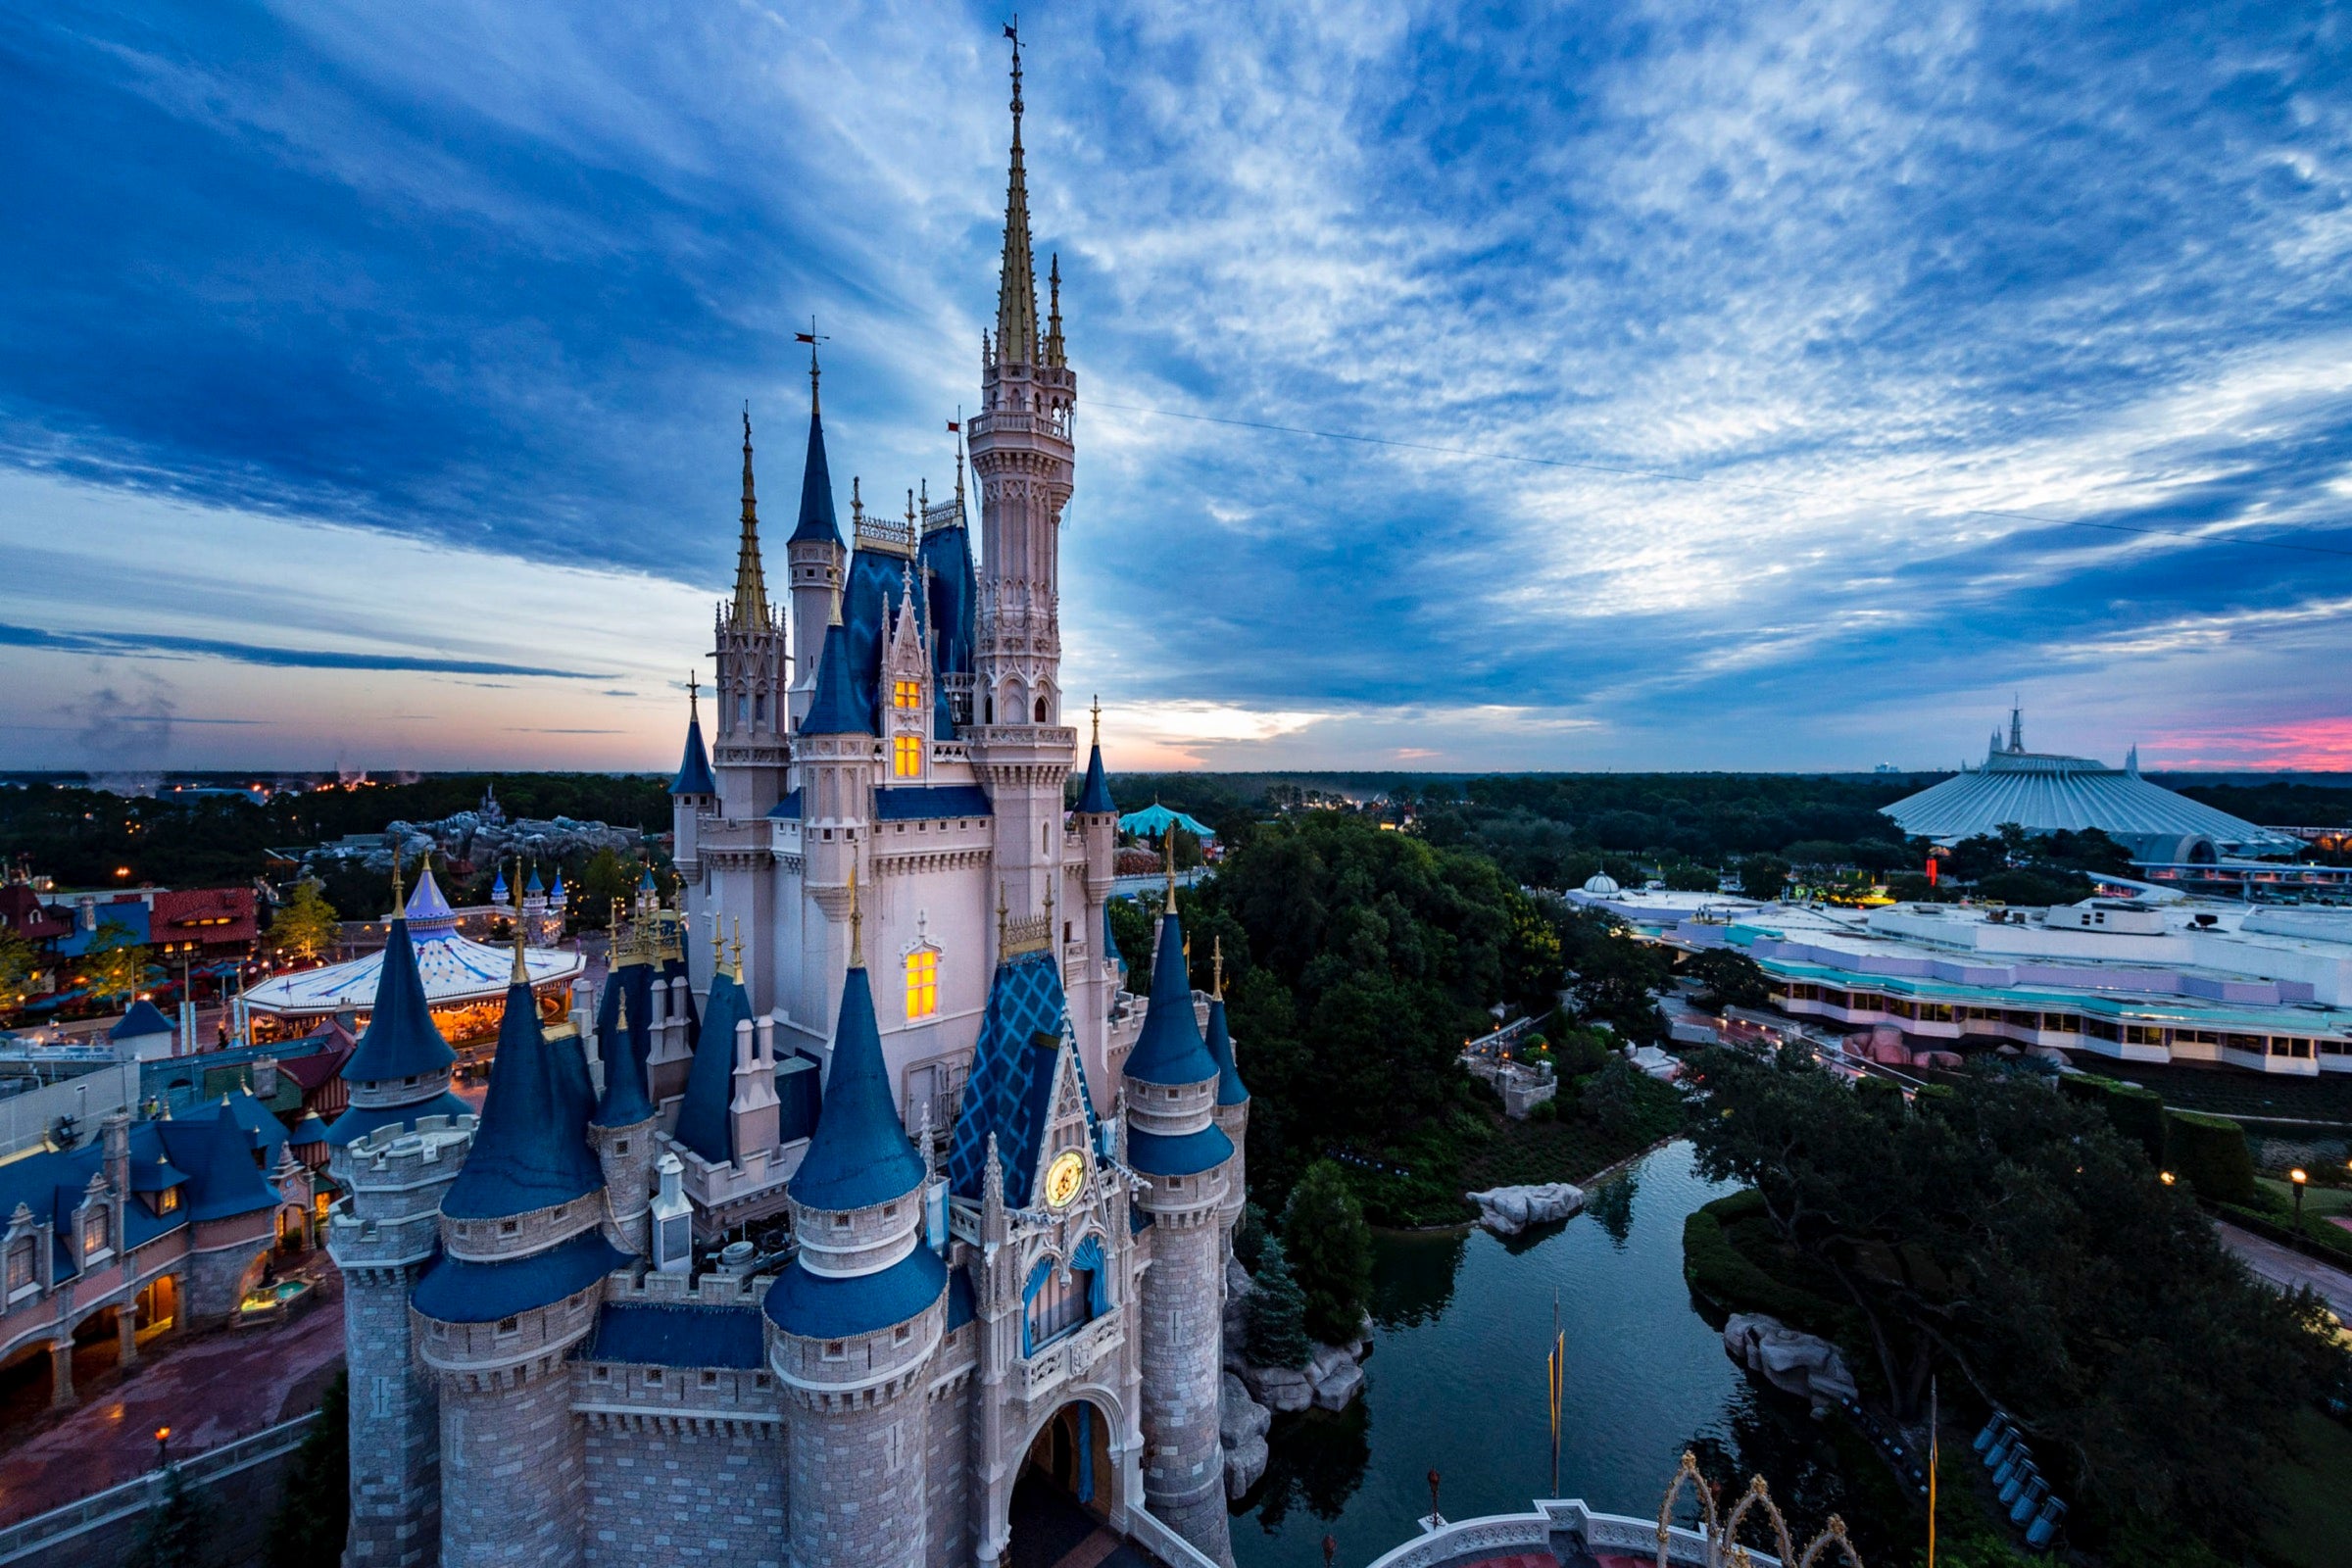 Castle in Walt Disney World